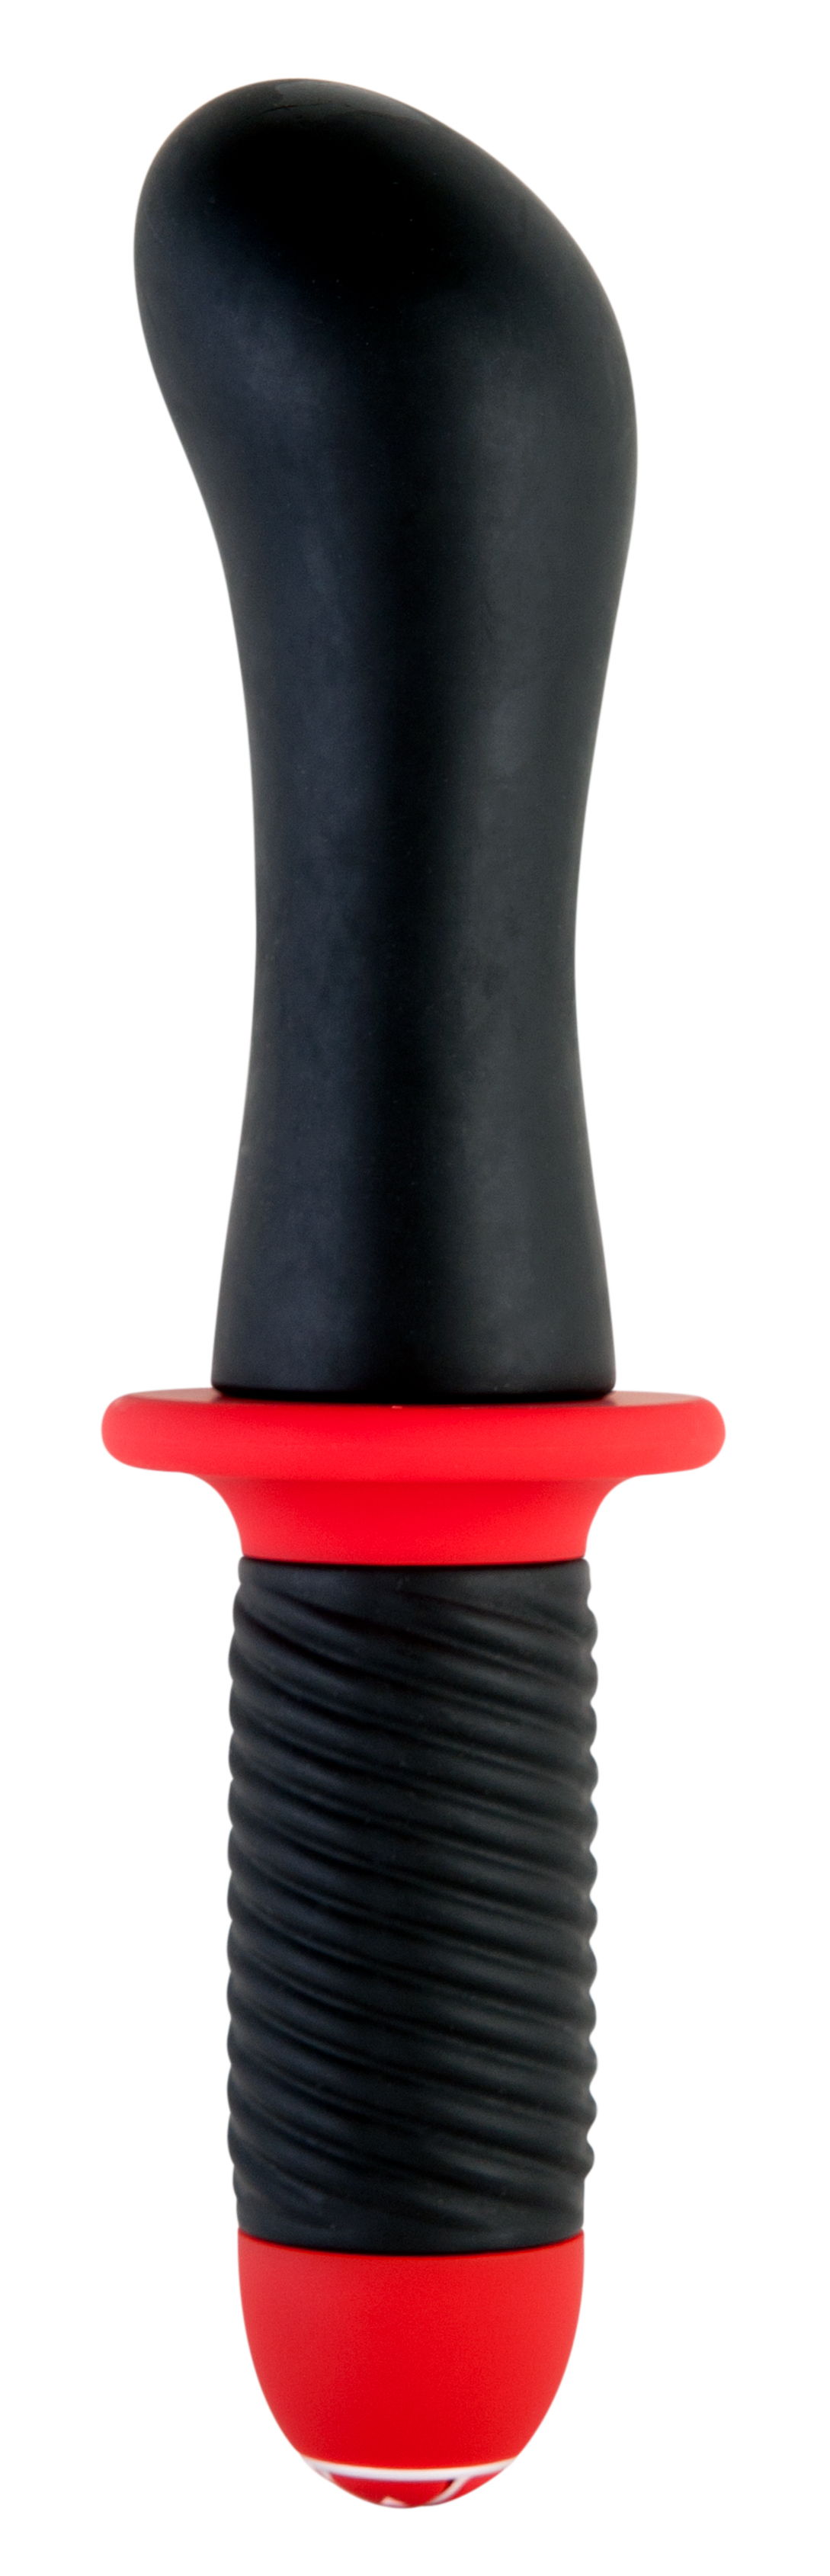 Анальный стимулятор Black & Red by TOYFA с вибрацией, водонепроницаемый, силикон, чёрный, 27 см, Ø 5,7 см. Фото N2